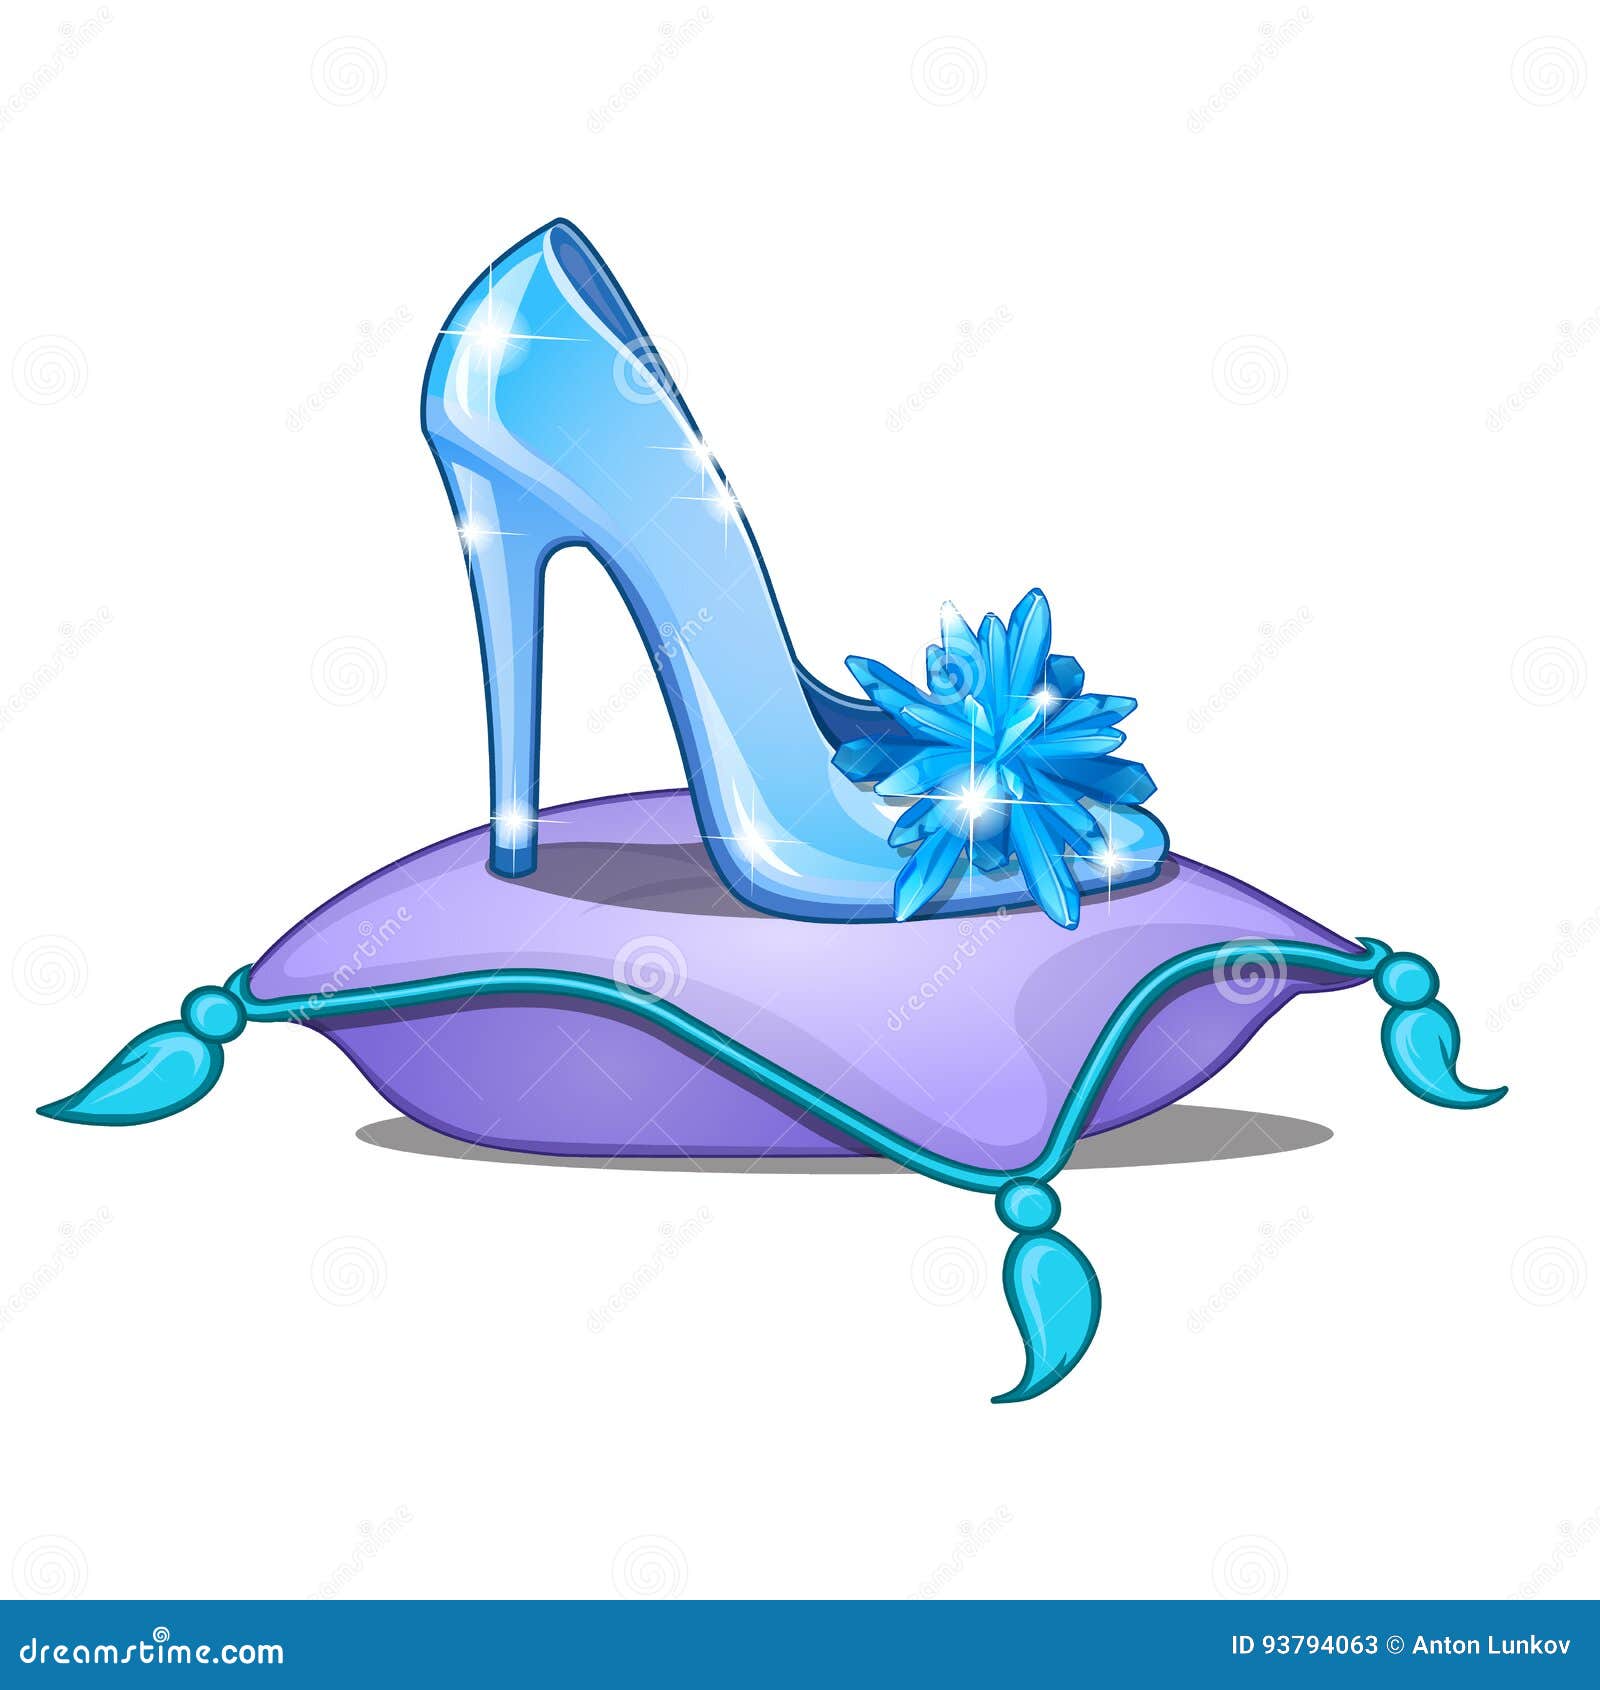 cinderella shoes cartoon